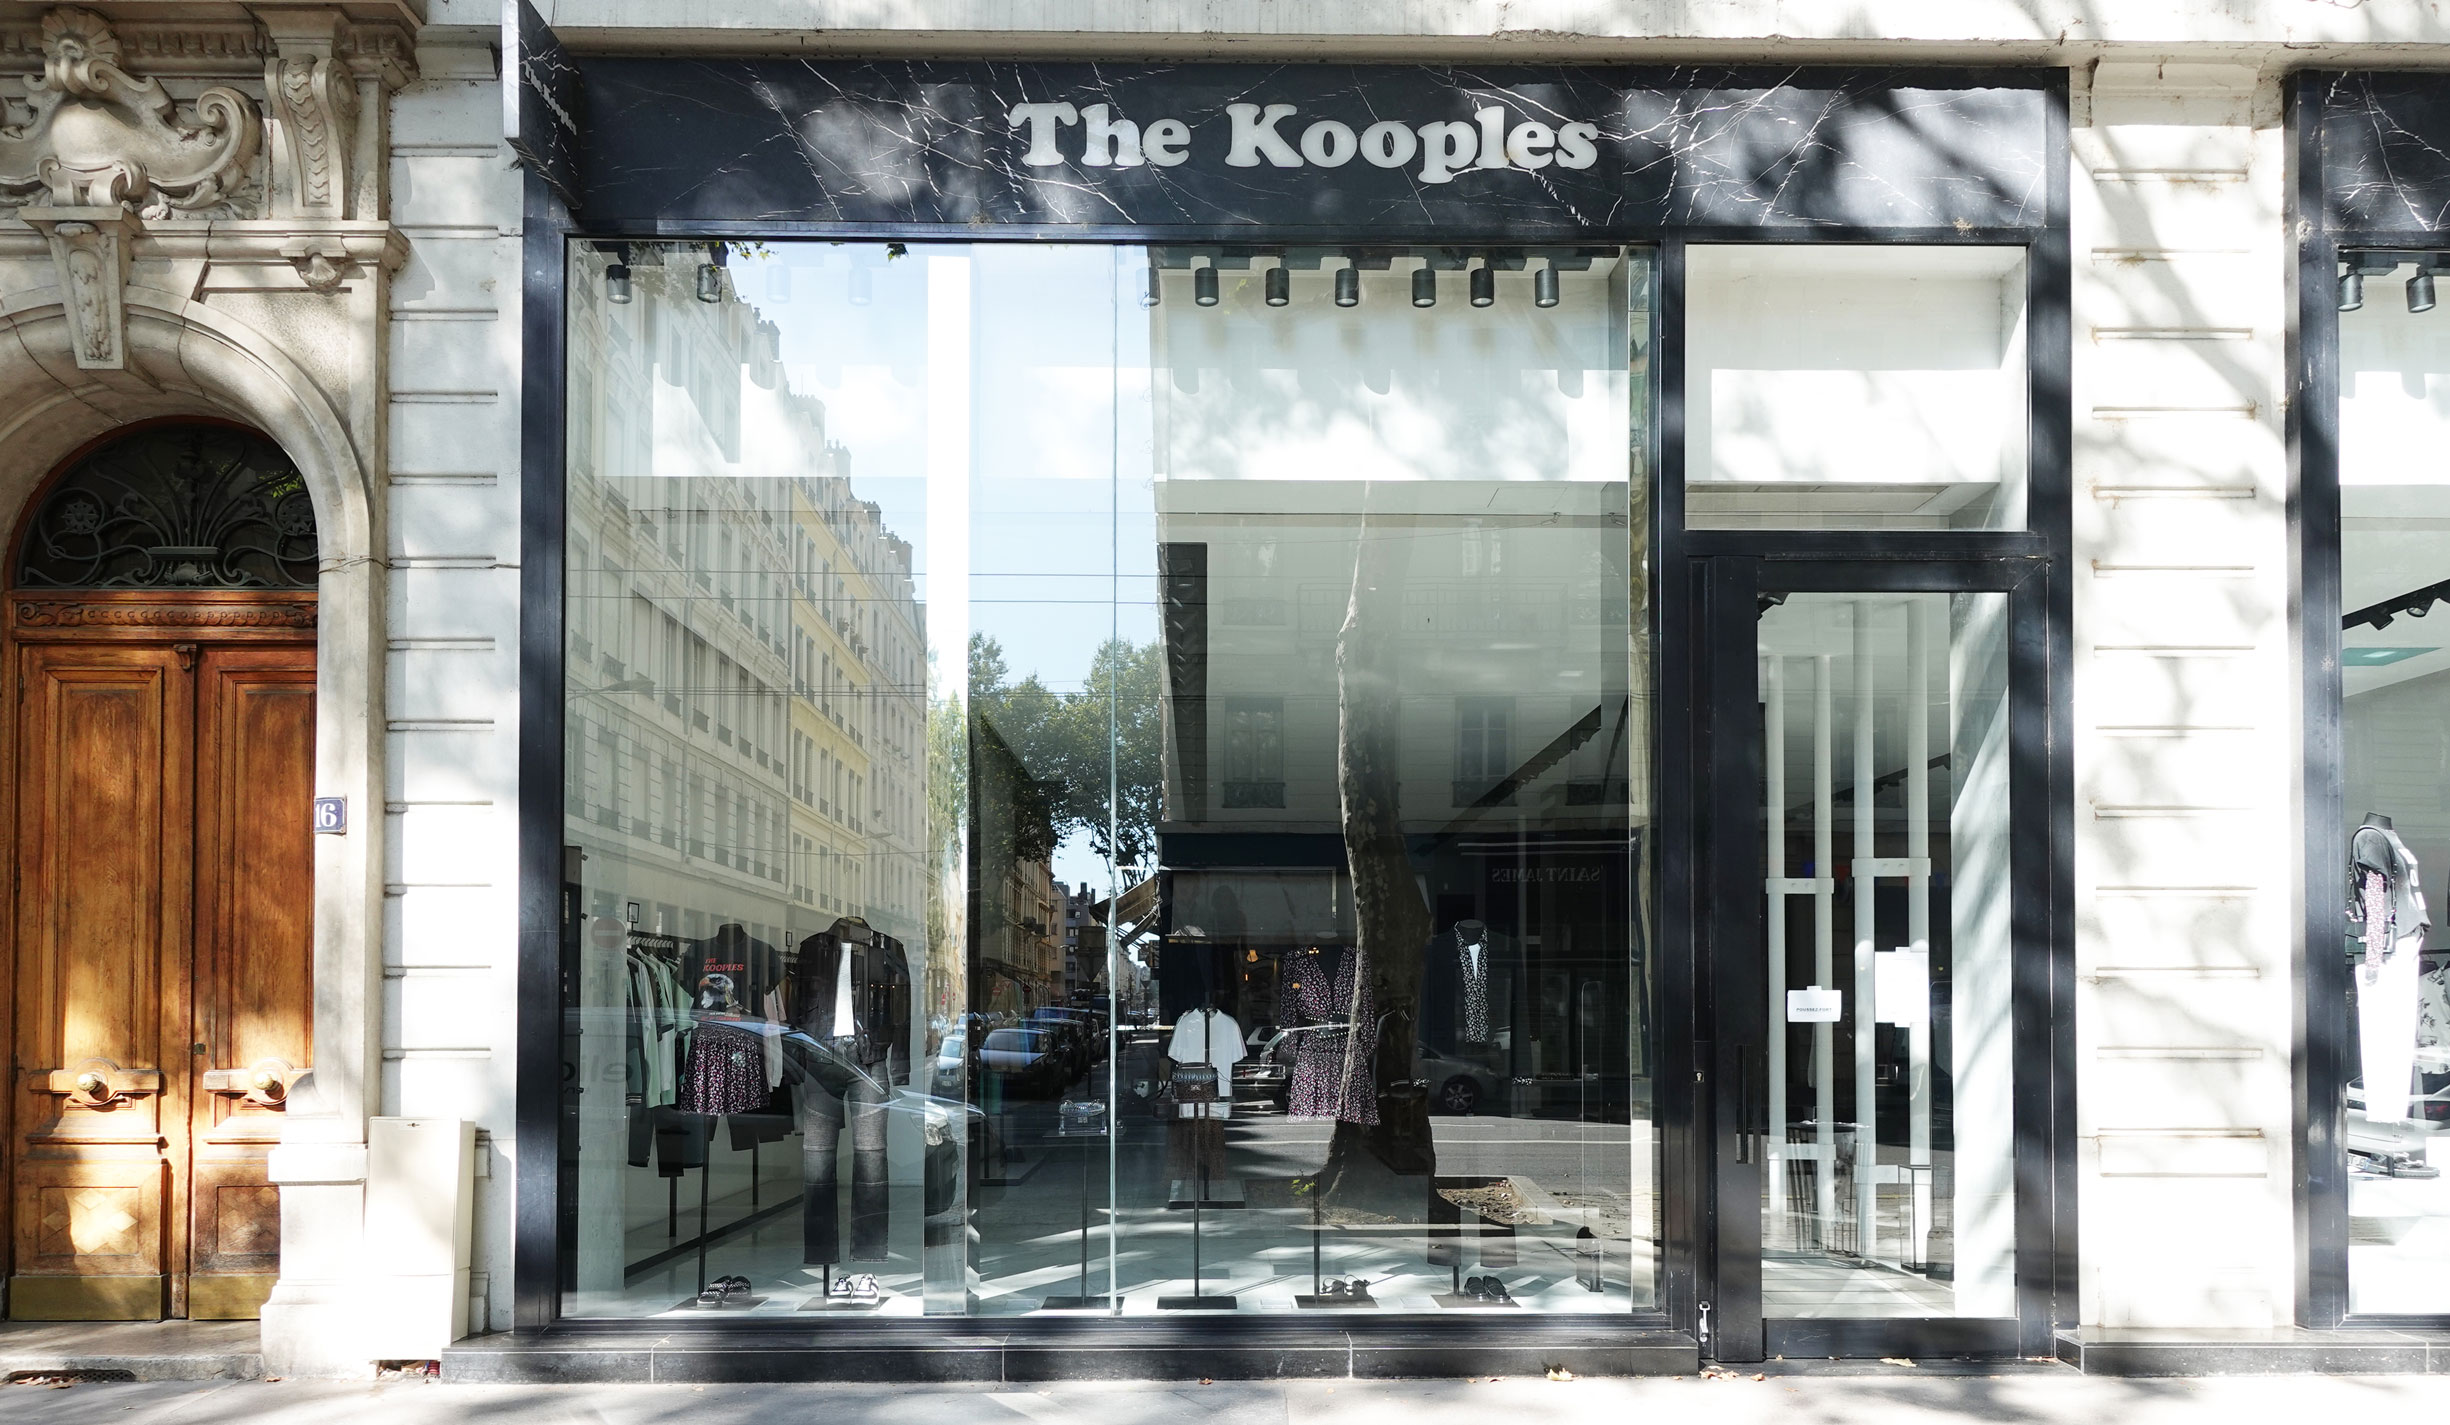 Remplacement de vitrine pour la boutique The Kooples de Foch